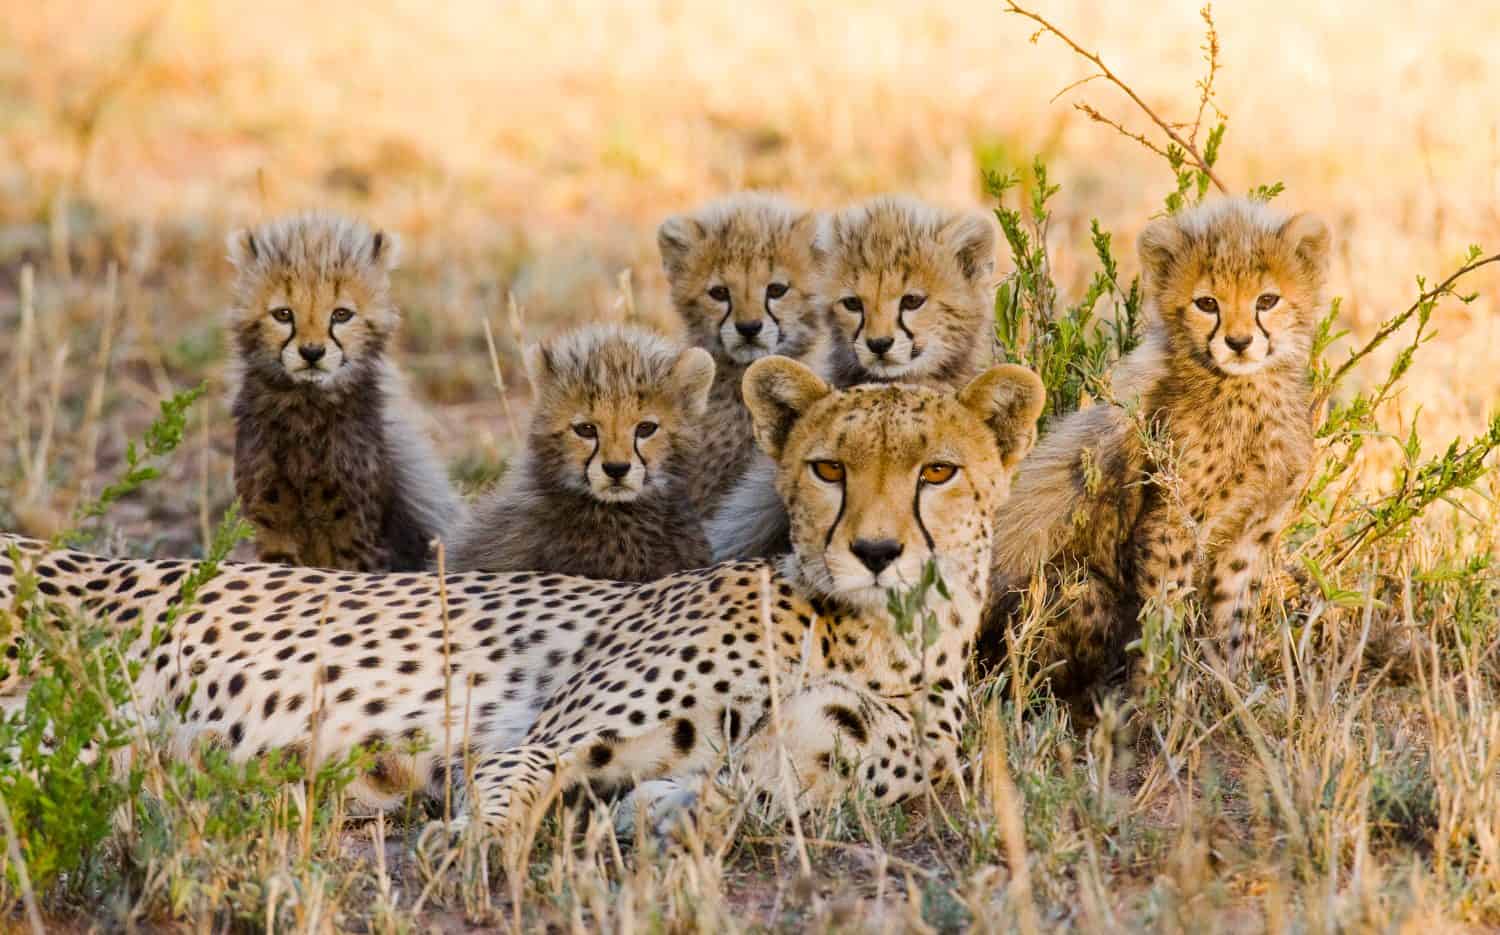 Mamma ghepardo e i suoi cuccioli nella savana.  Kenia.  Tanzania.  Africa.  Parco Nazionale.  Serengeti.  Masai Mara.  Un'eccellente illustrazione.